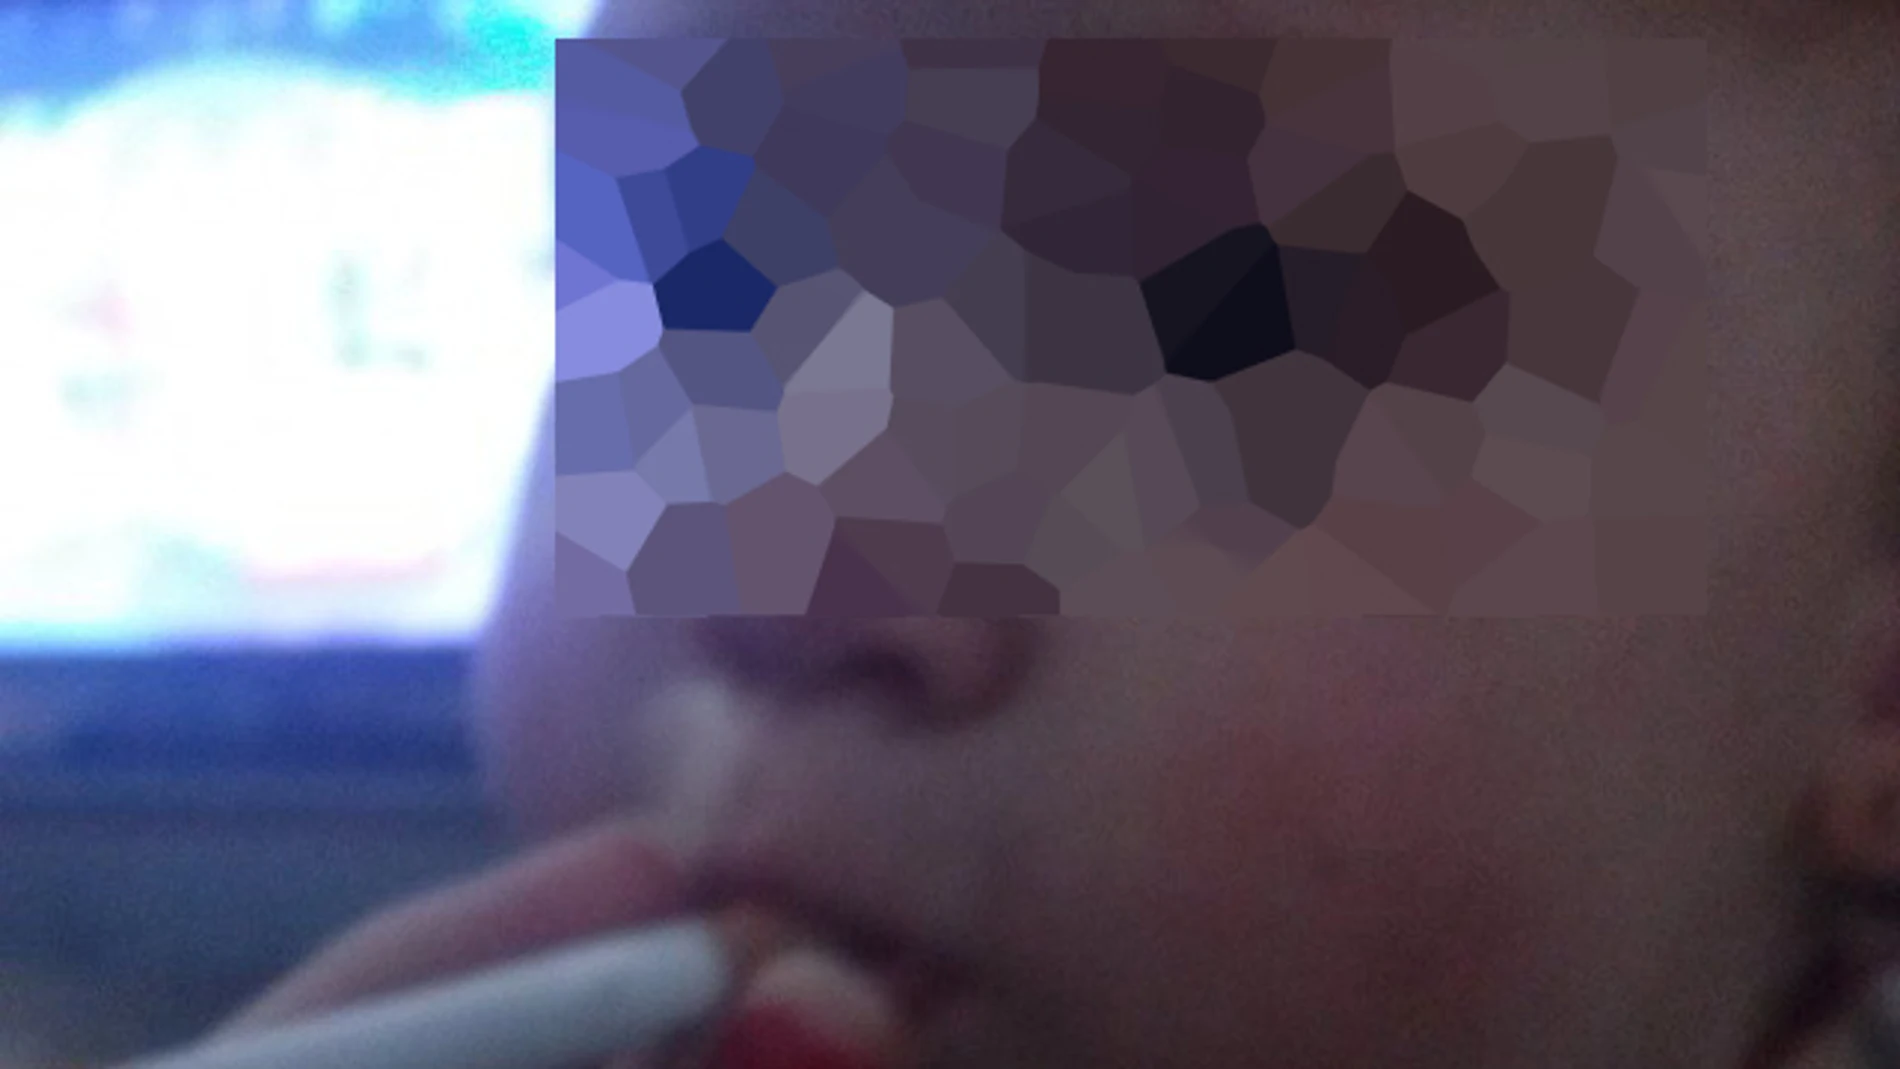 La niña, de un año, fumando ha desaado la ira de los internautas